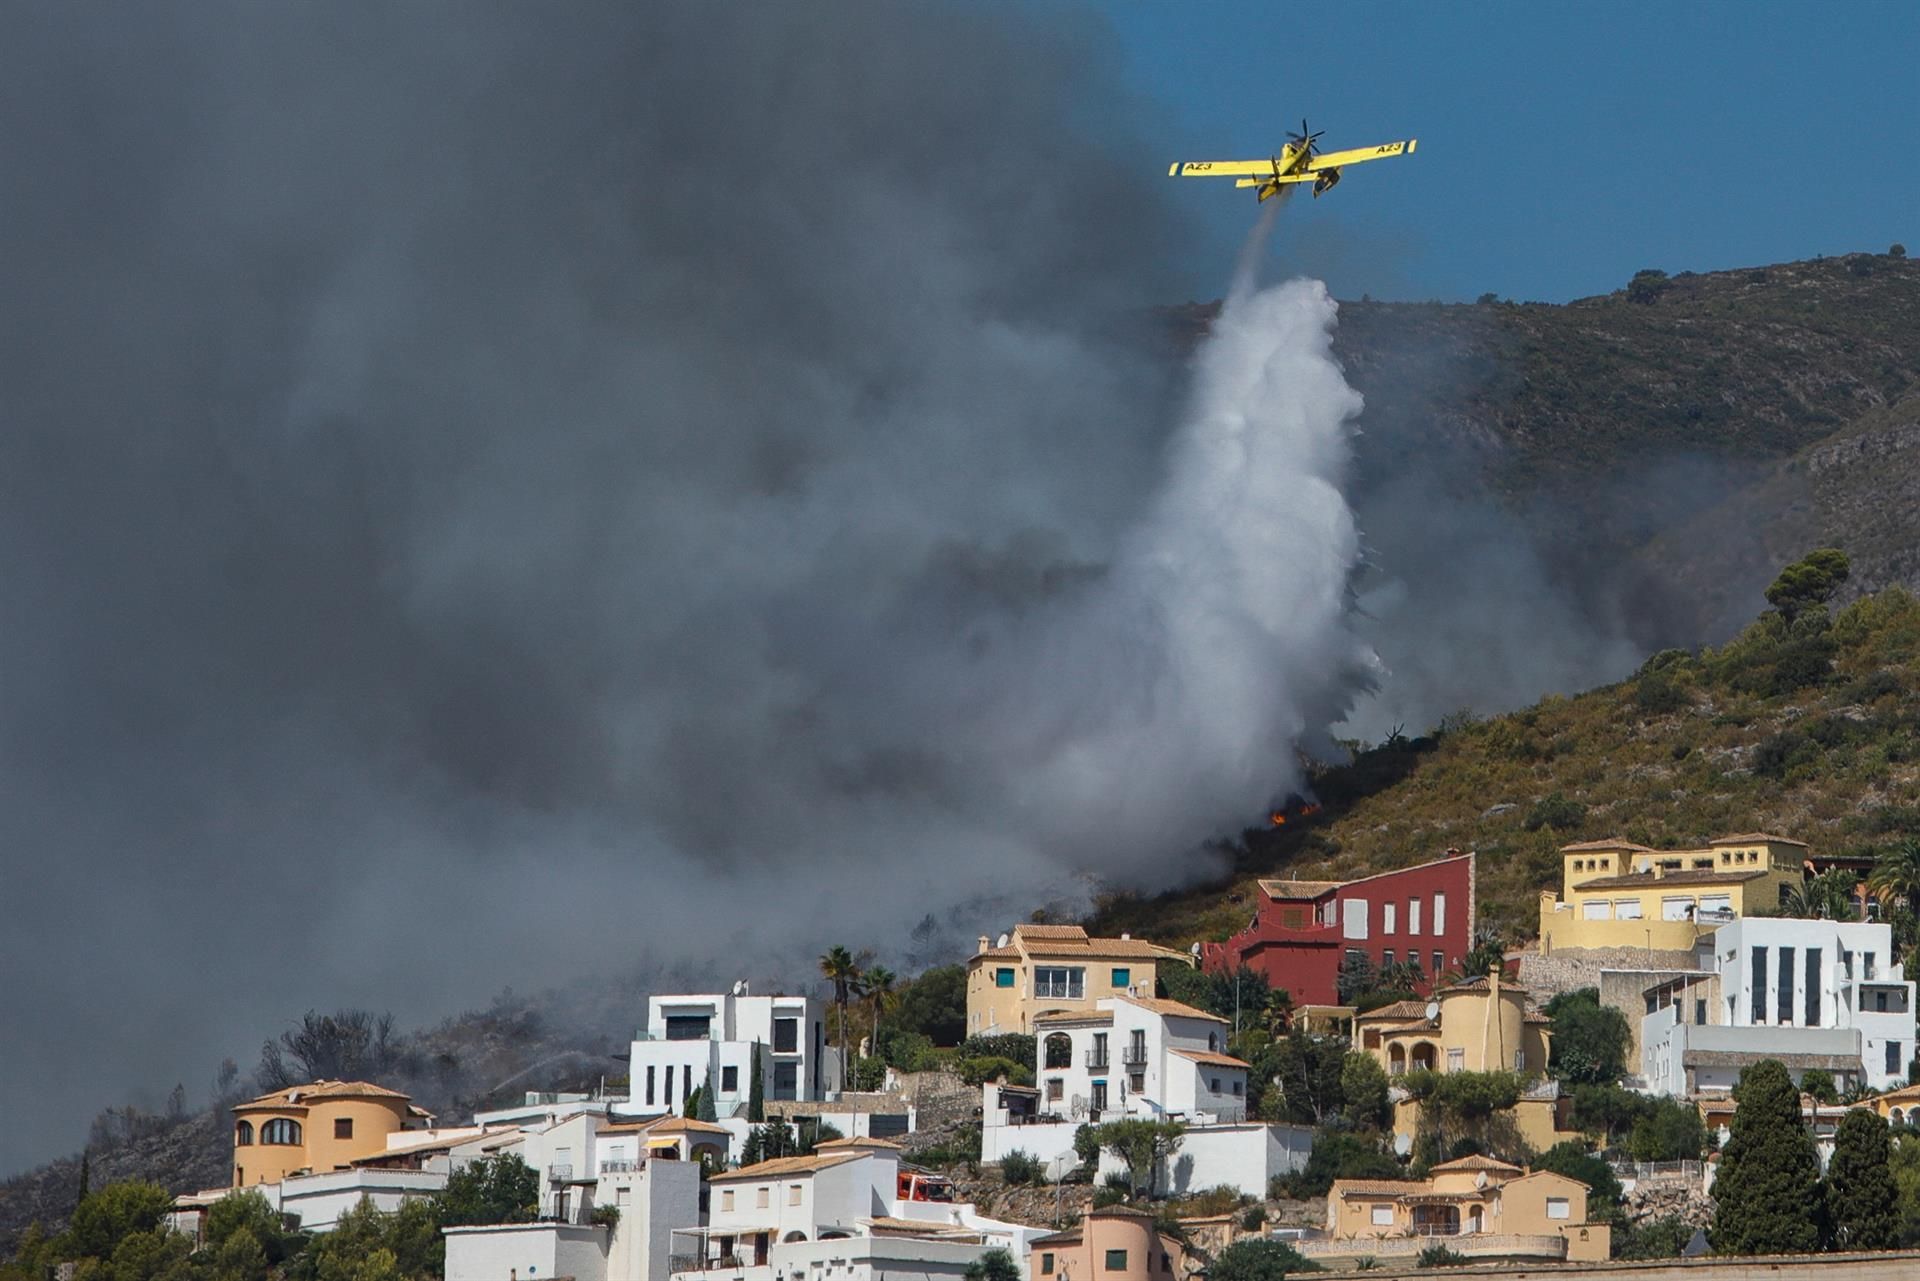 En la imagen una avioneta realiza una descarga de agua sobre las llamas que avanzan hacia una zona de viviendas en la Atzubia